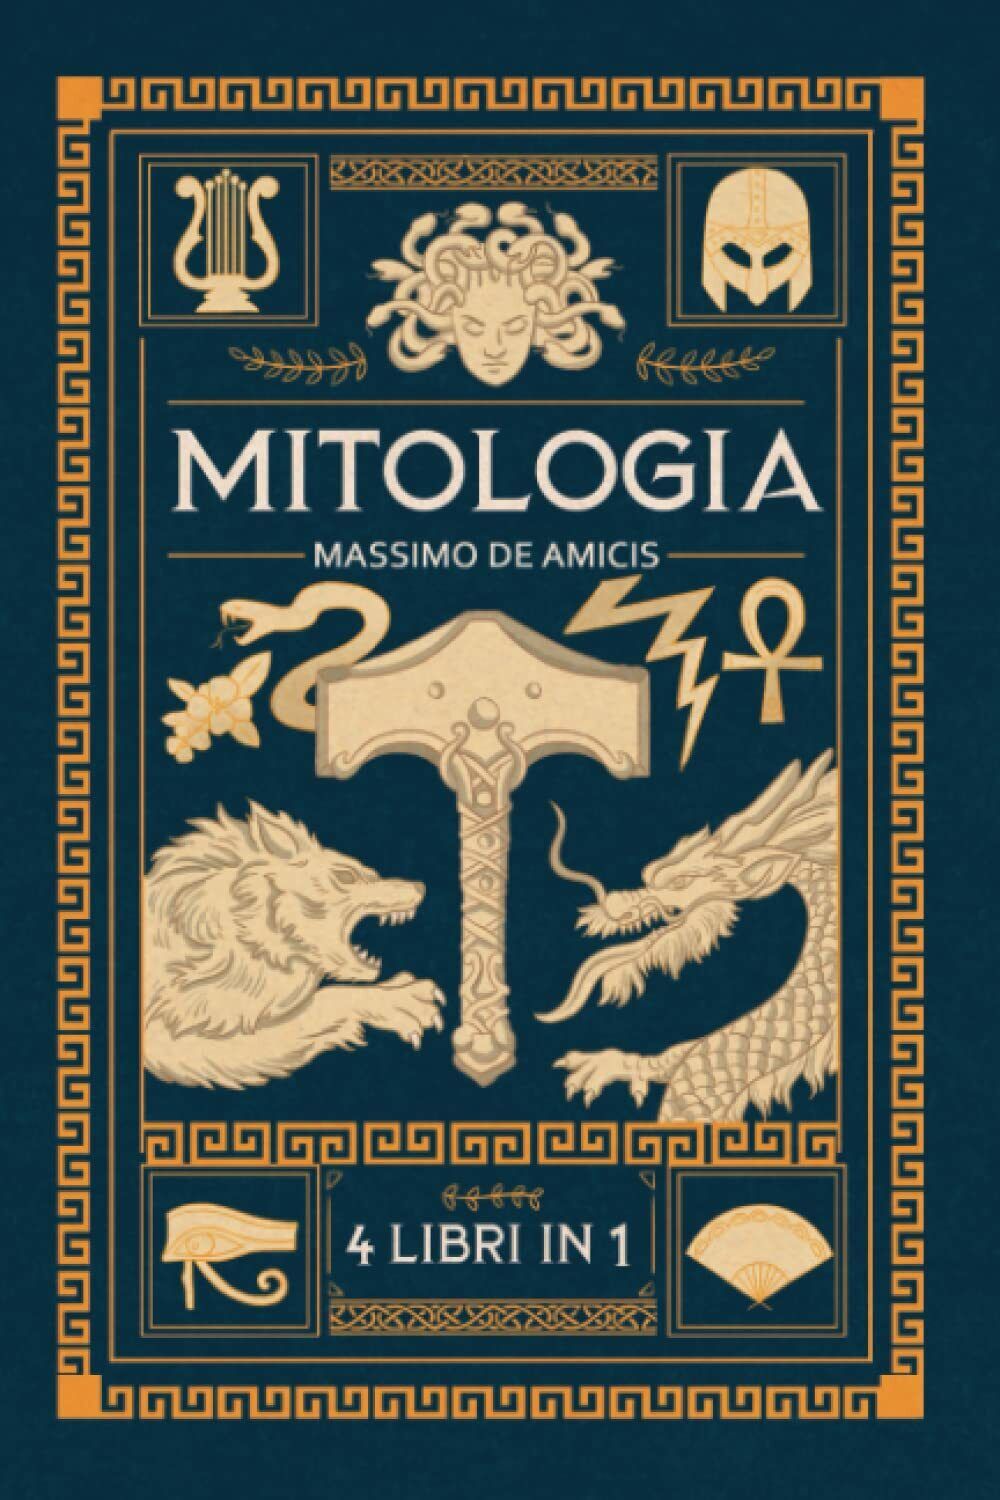 MITOLOGIA: 4 Libri in 1 - Mitologia Greca, Norrena, Egizia e Giapponese. Un viag